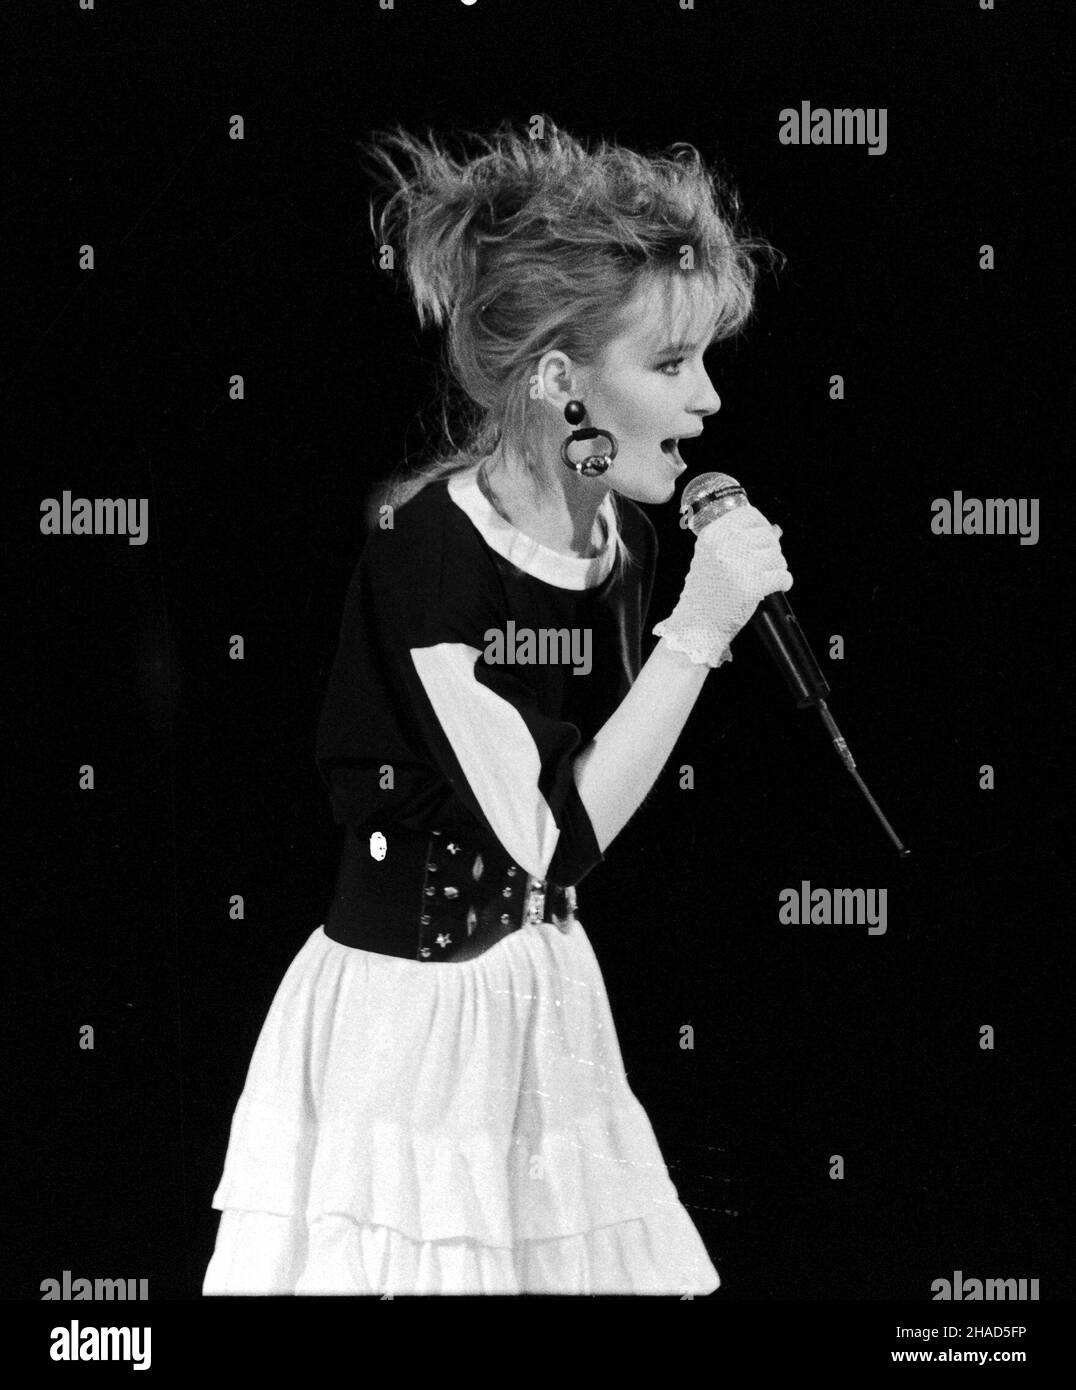 01,1988. Piosenkarka Halina Benedyk podczas koncertu. /bpt/ PAP/CAF - Zbigniew Staszyszyn Foto Stock